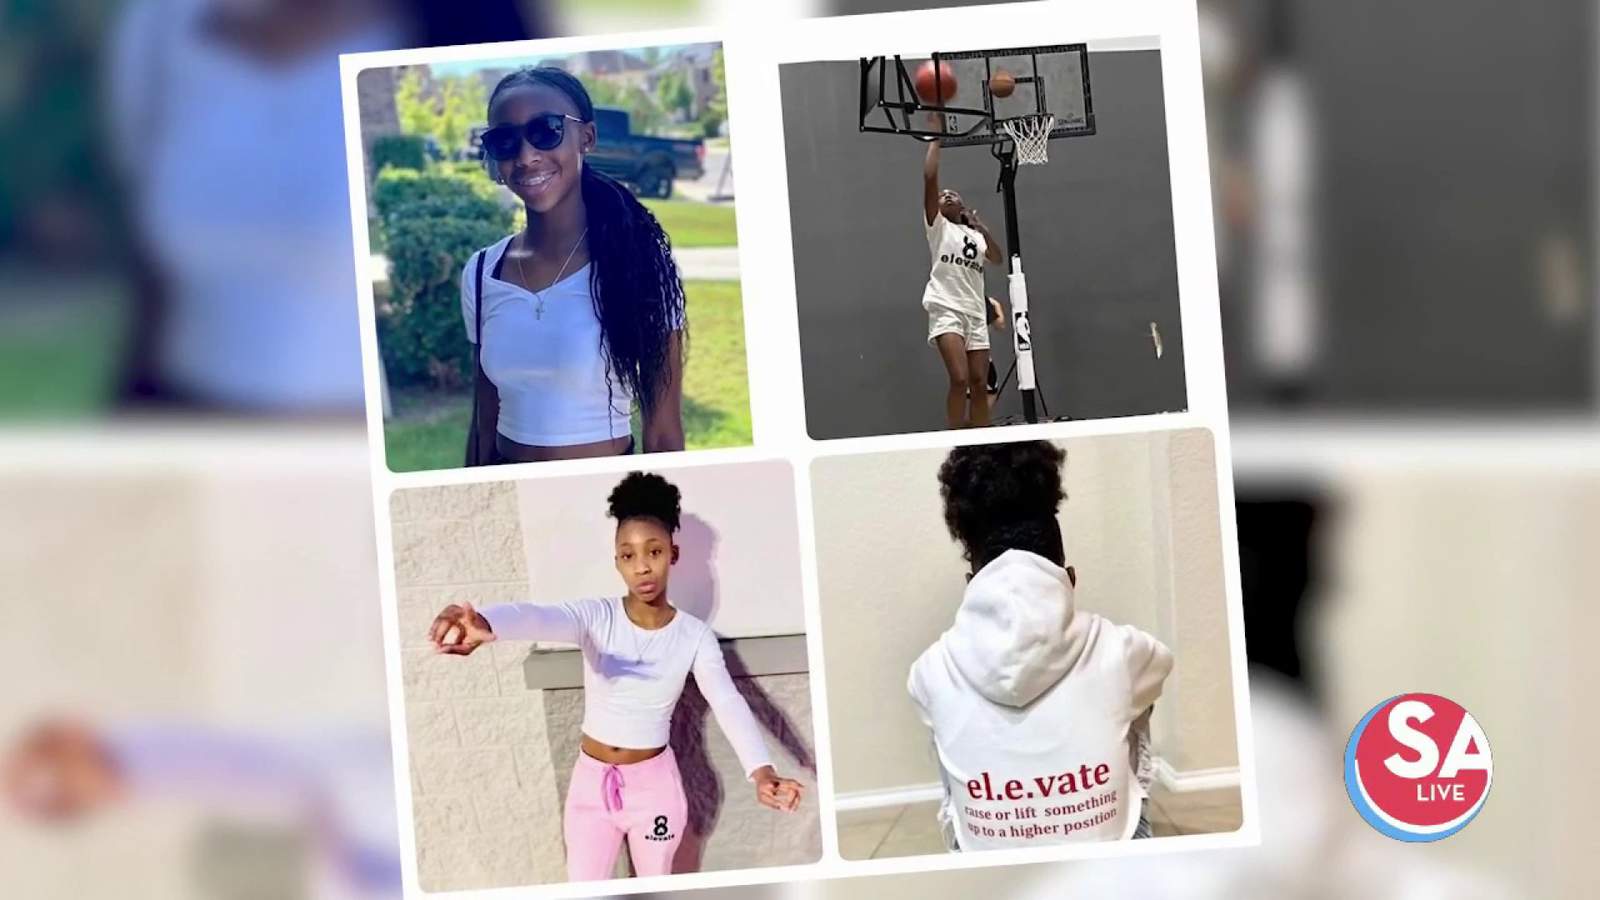 San Antonio 13-year-old athlete starts inspiring clothing line